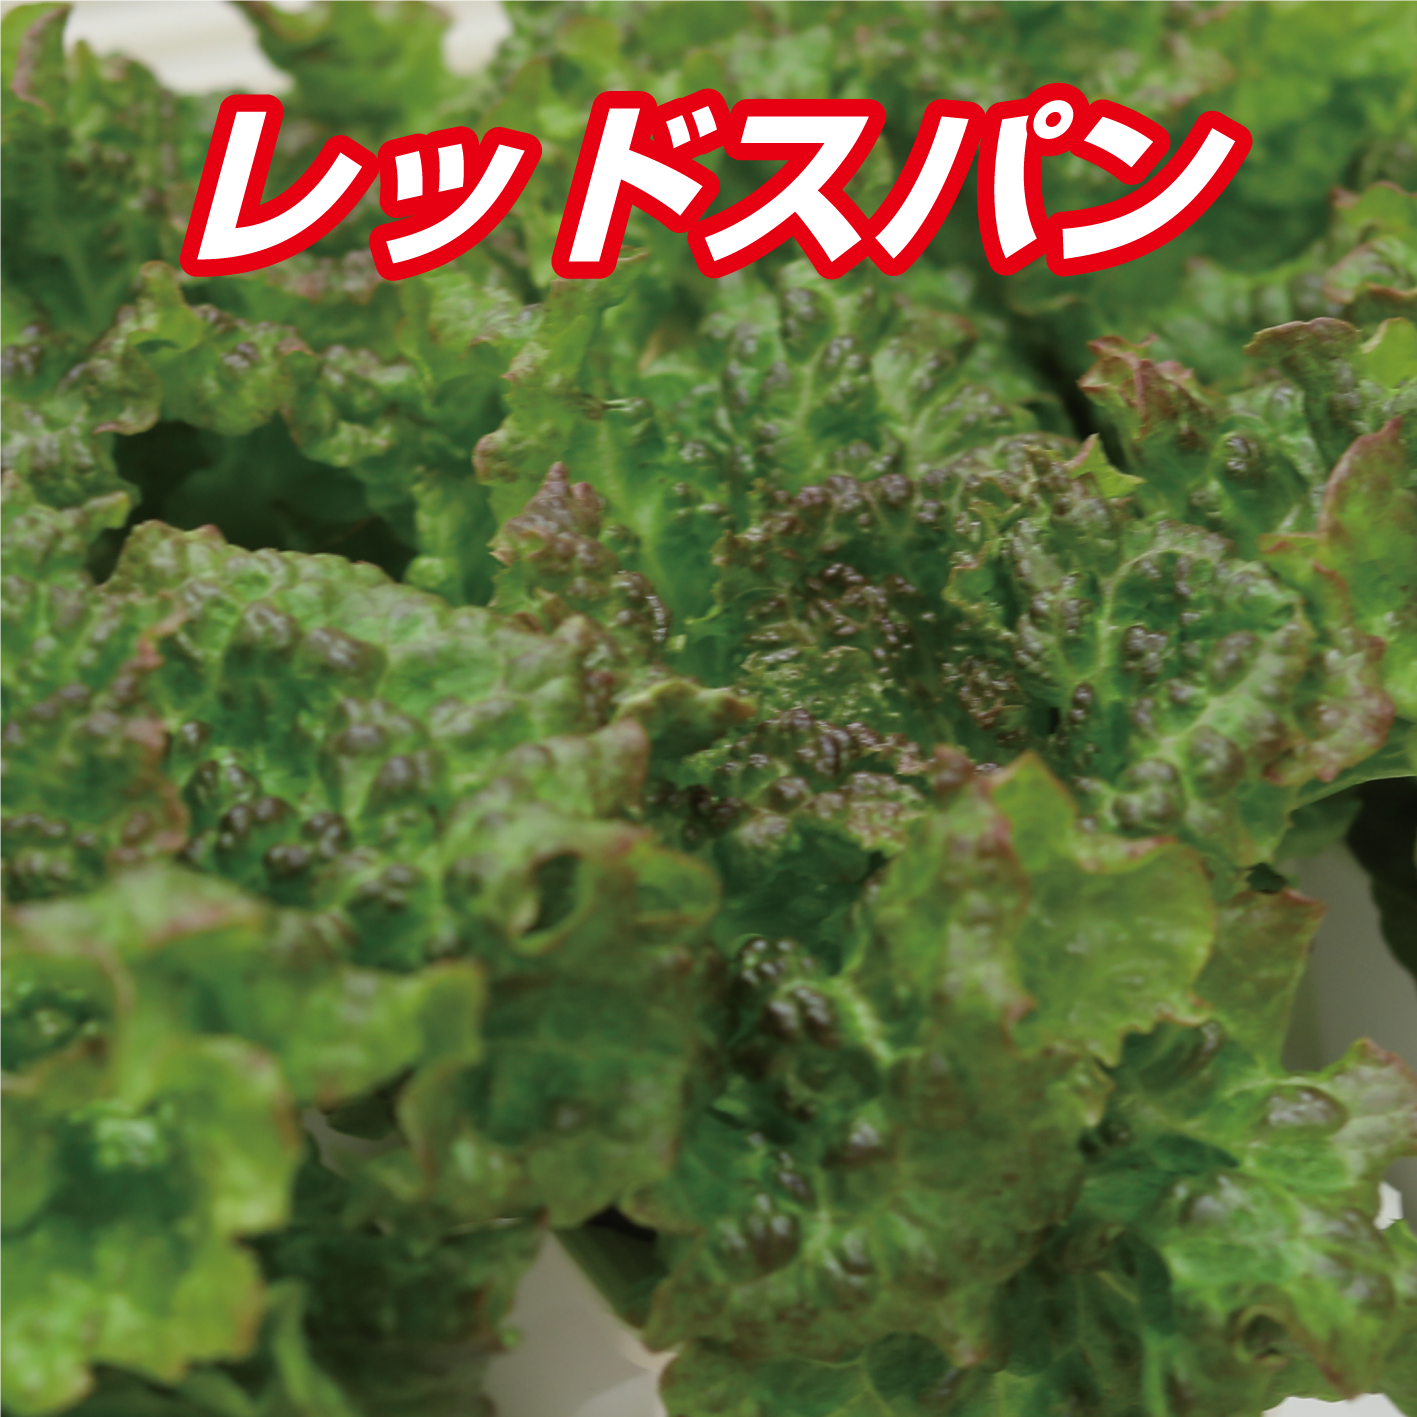 新鮮な根付きレタス3種MIX 1kg 愛知県産【朝採り当日発送】